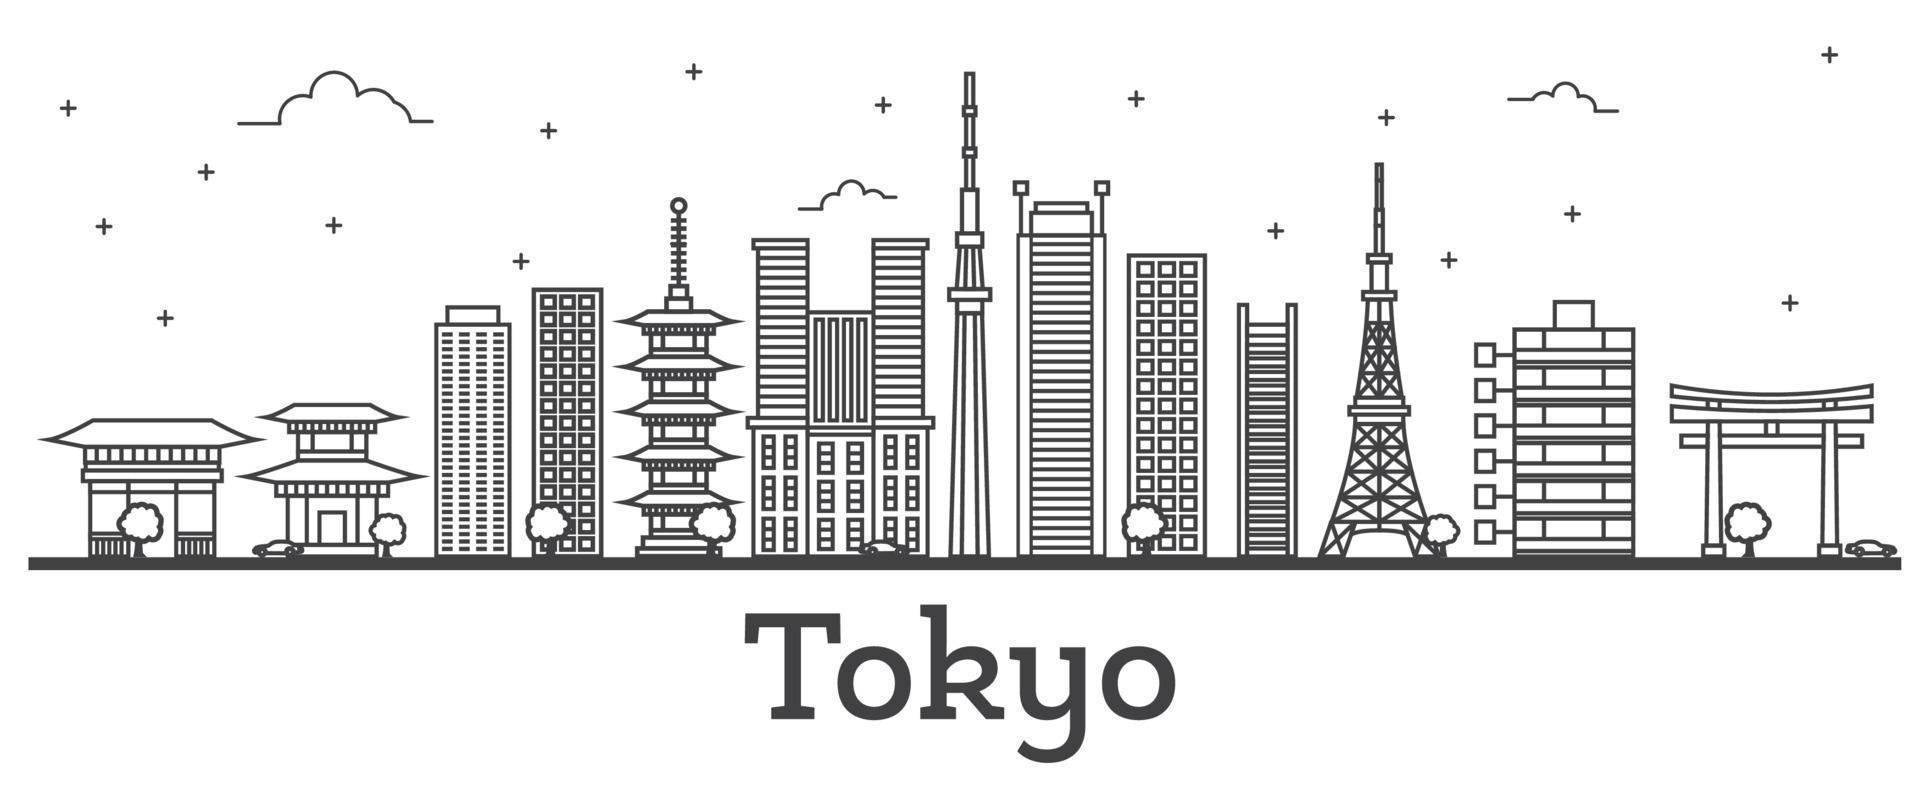 delineie o horizonte da cidade de Tóquio no Japão com edifícios modernos isolados em branco. vetor